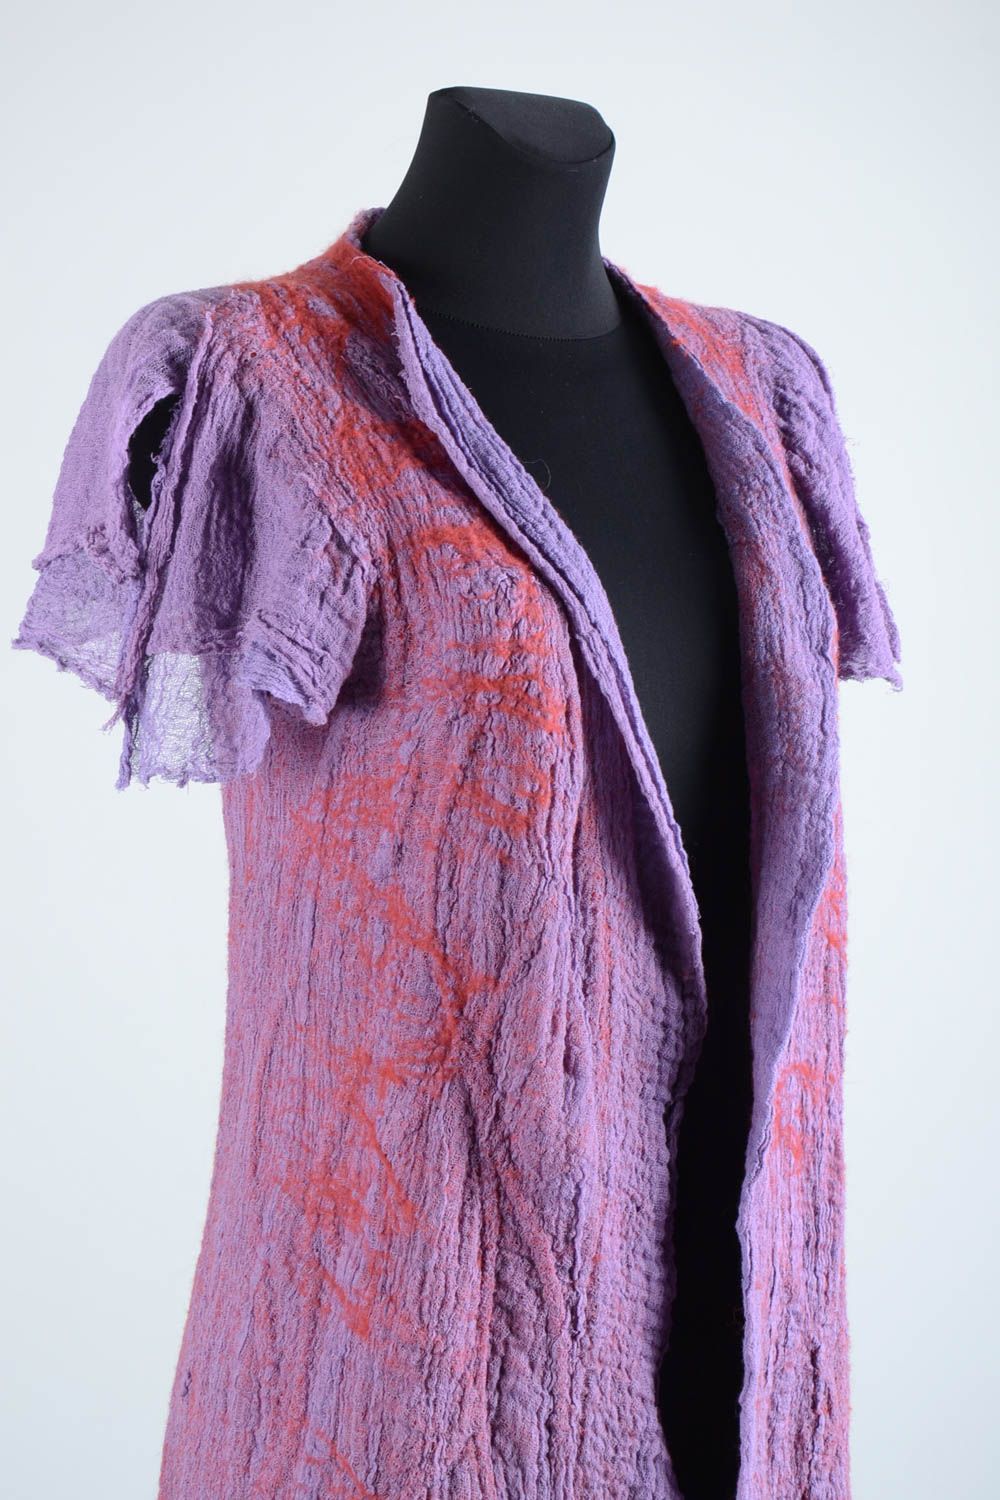 Manteau été femme fait main Manteau laine violet manches courtes Vêtement femme photo 2